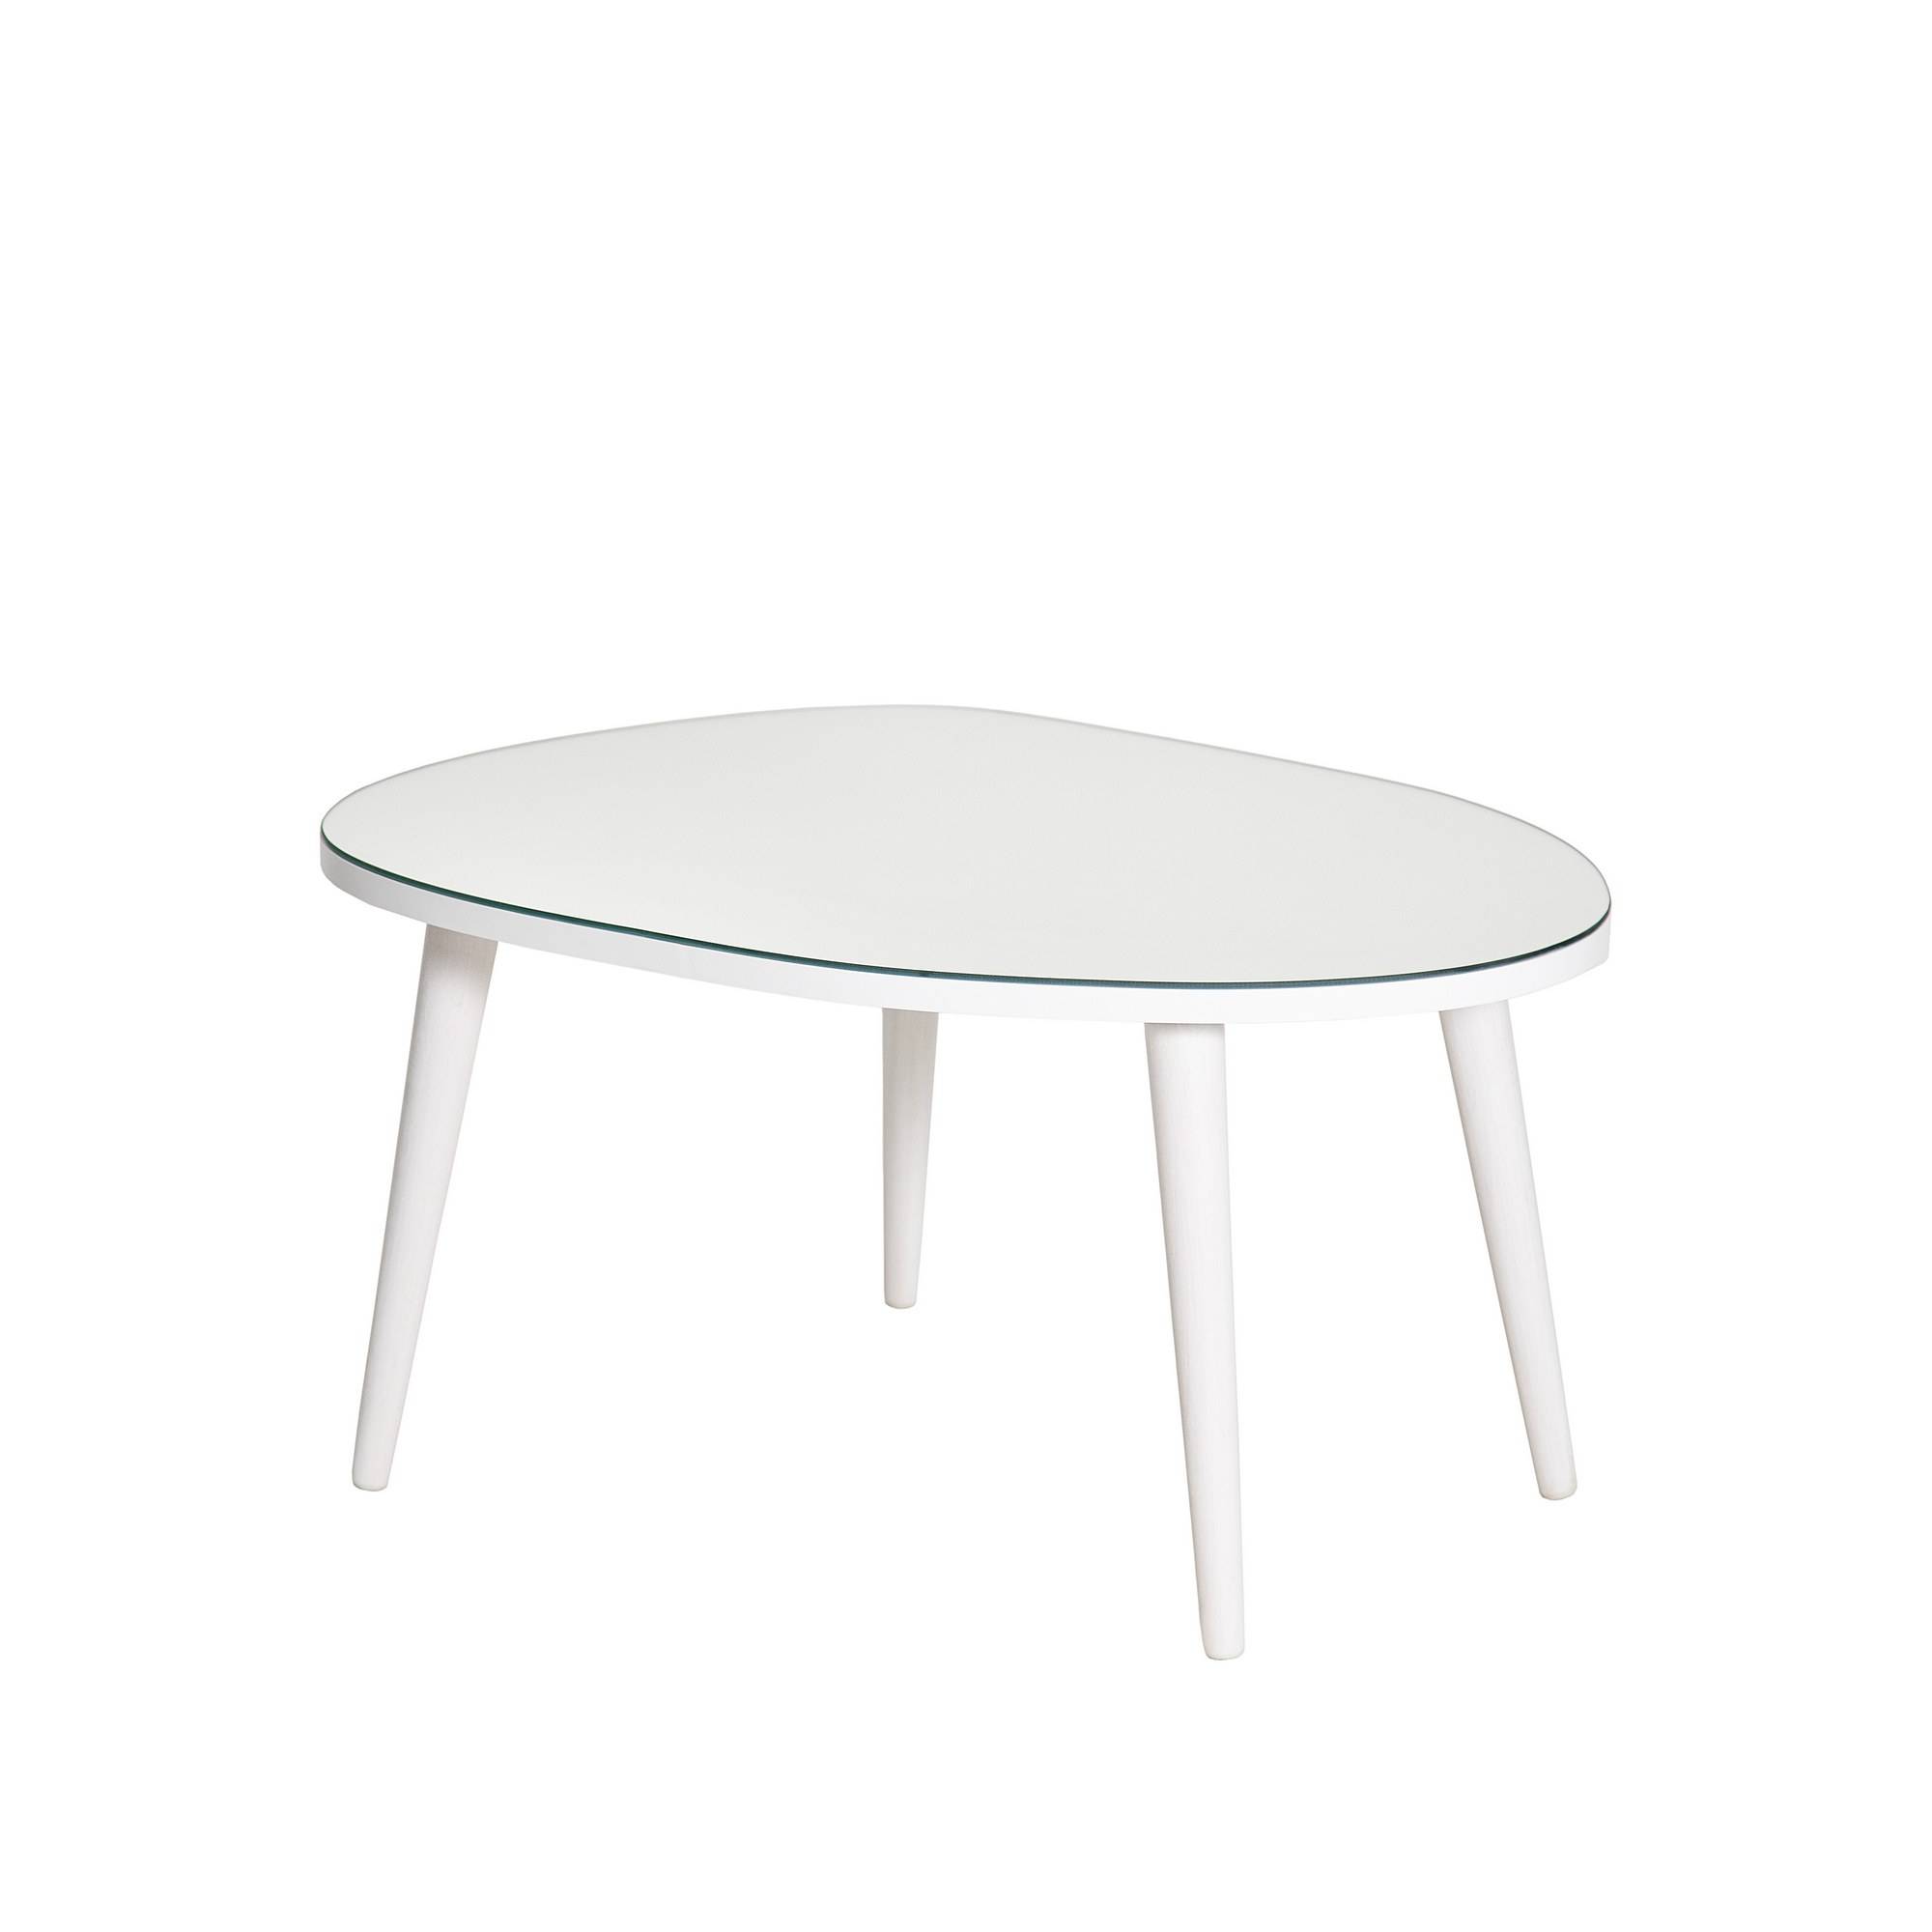 Tavolino ovale a treppiede Casina 55x75cm Legno bianco e vetro a specchio